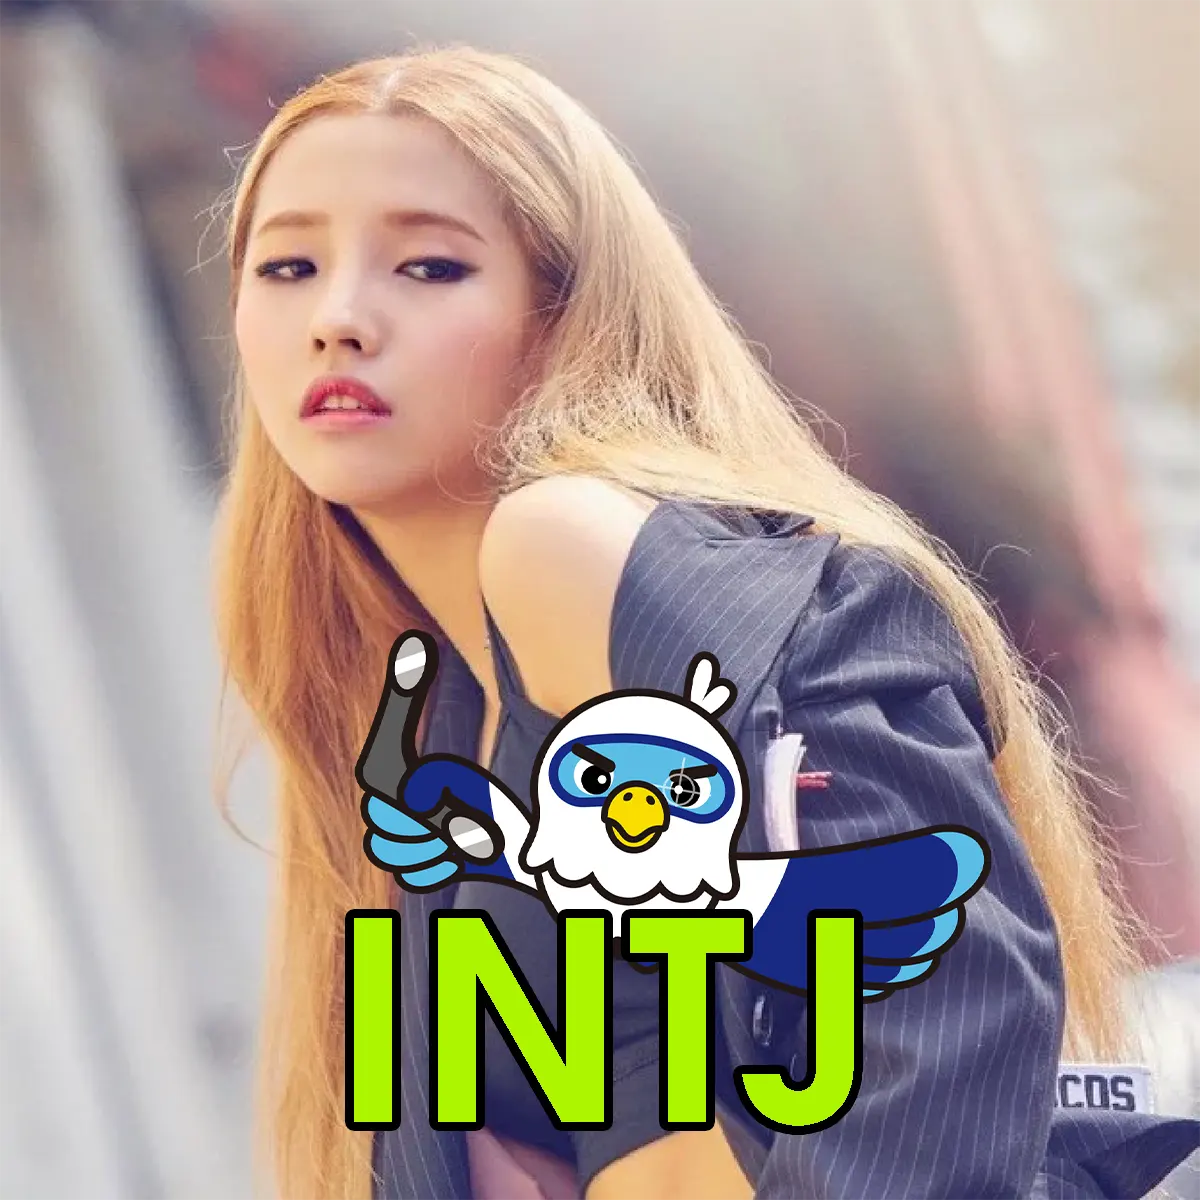 Idols as your MBTI- INTJ version #ryujin #itzy #soyeon #gidle